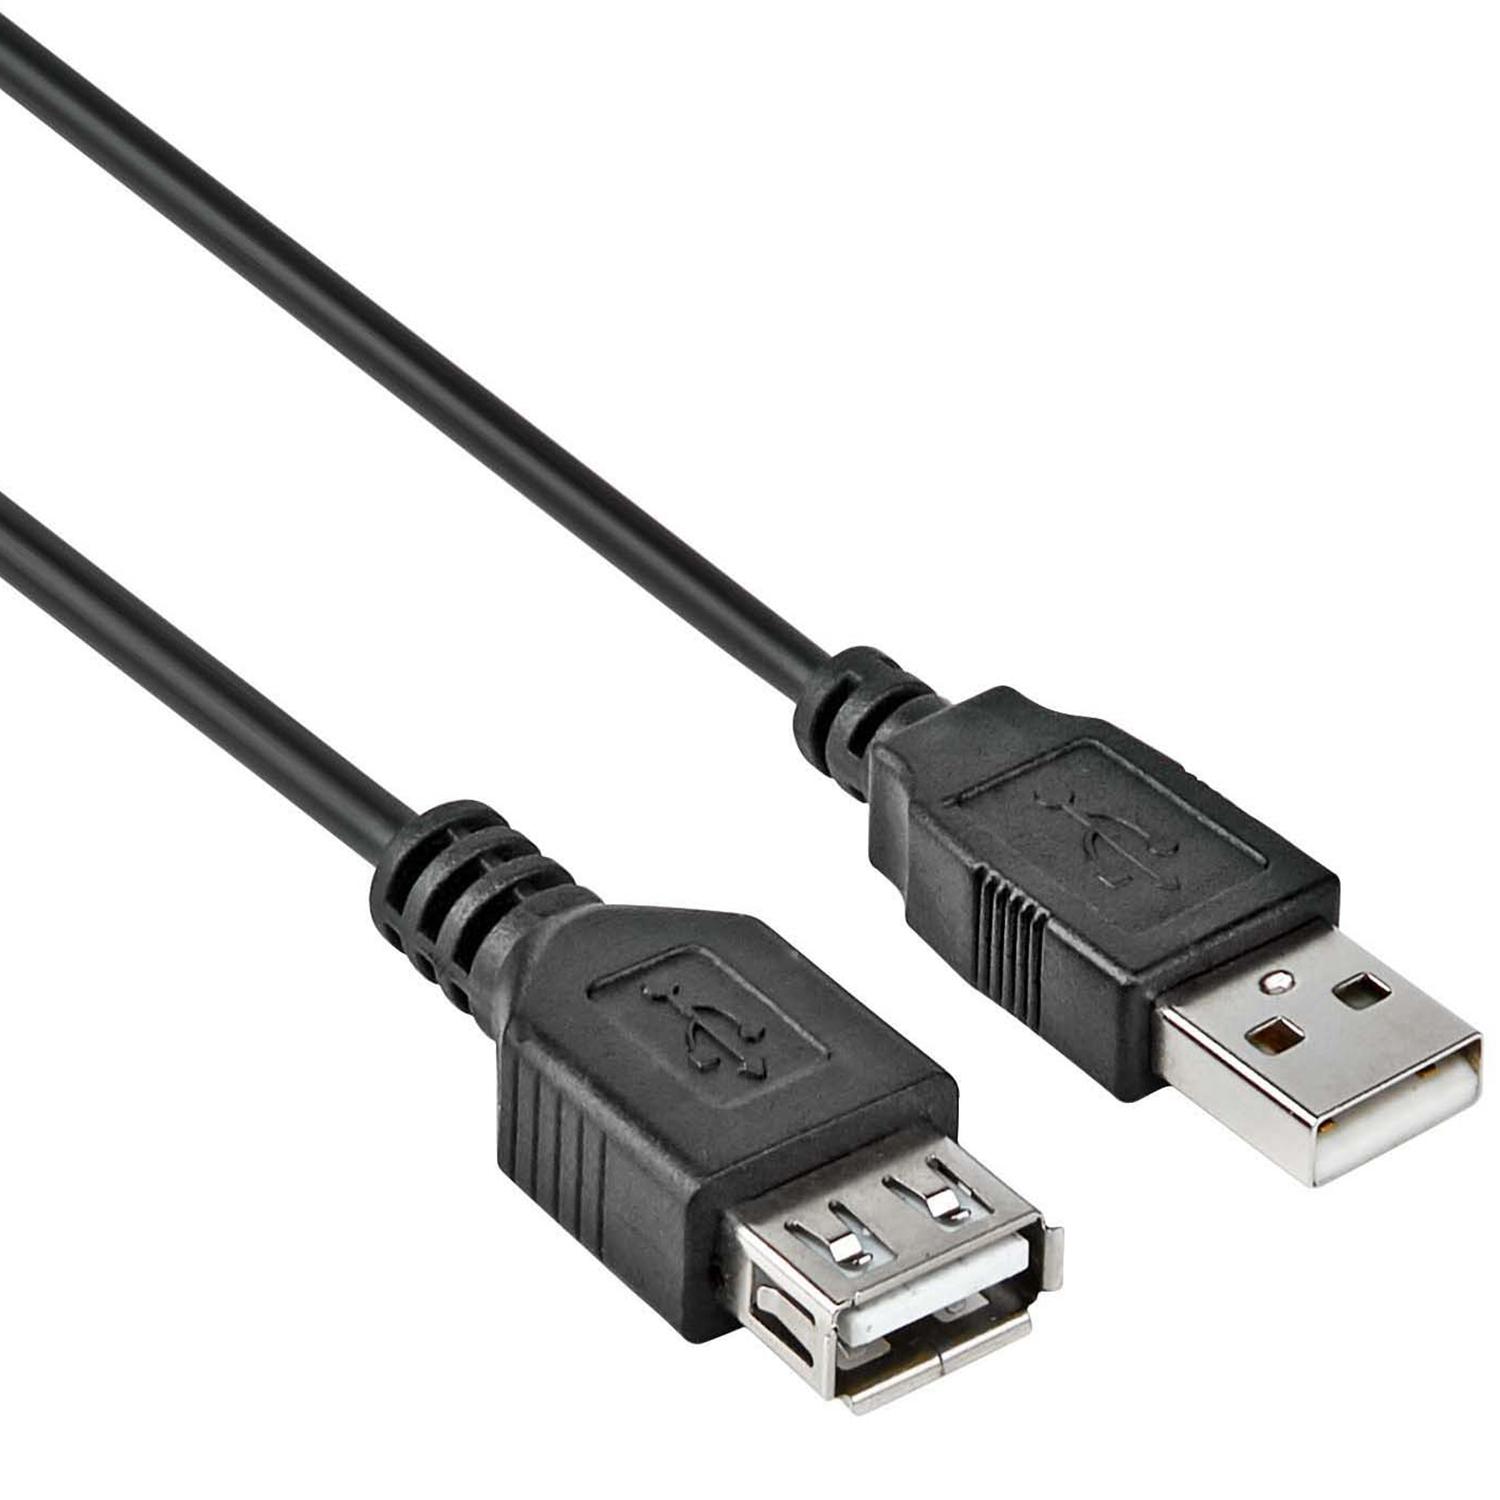 Afstotend Pef accumuleren Sb 2218 0.50m usb 2.0 a-a m/f black - USB 2.0 verlengkabel USB A male - USB  A female zwart